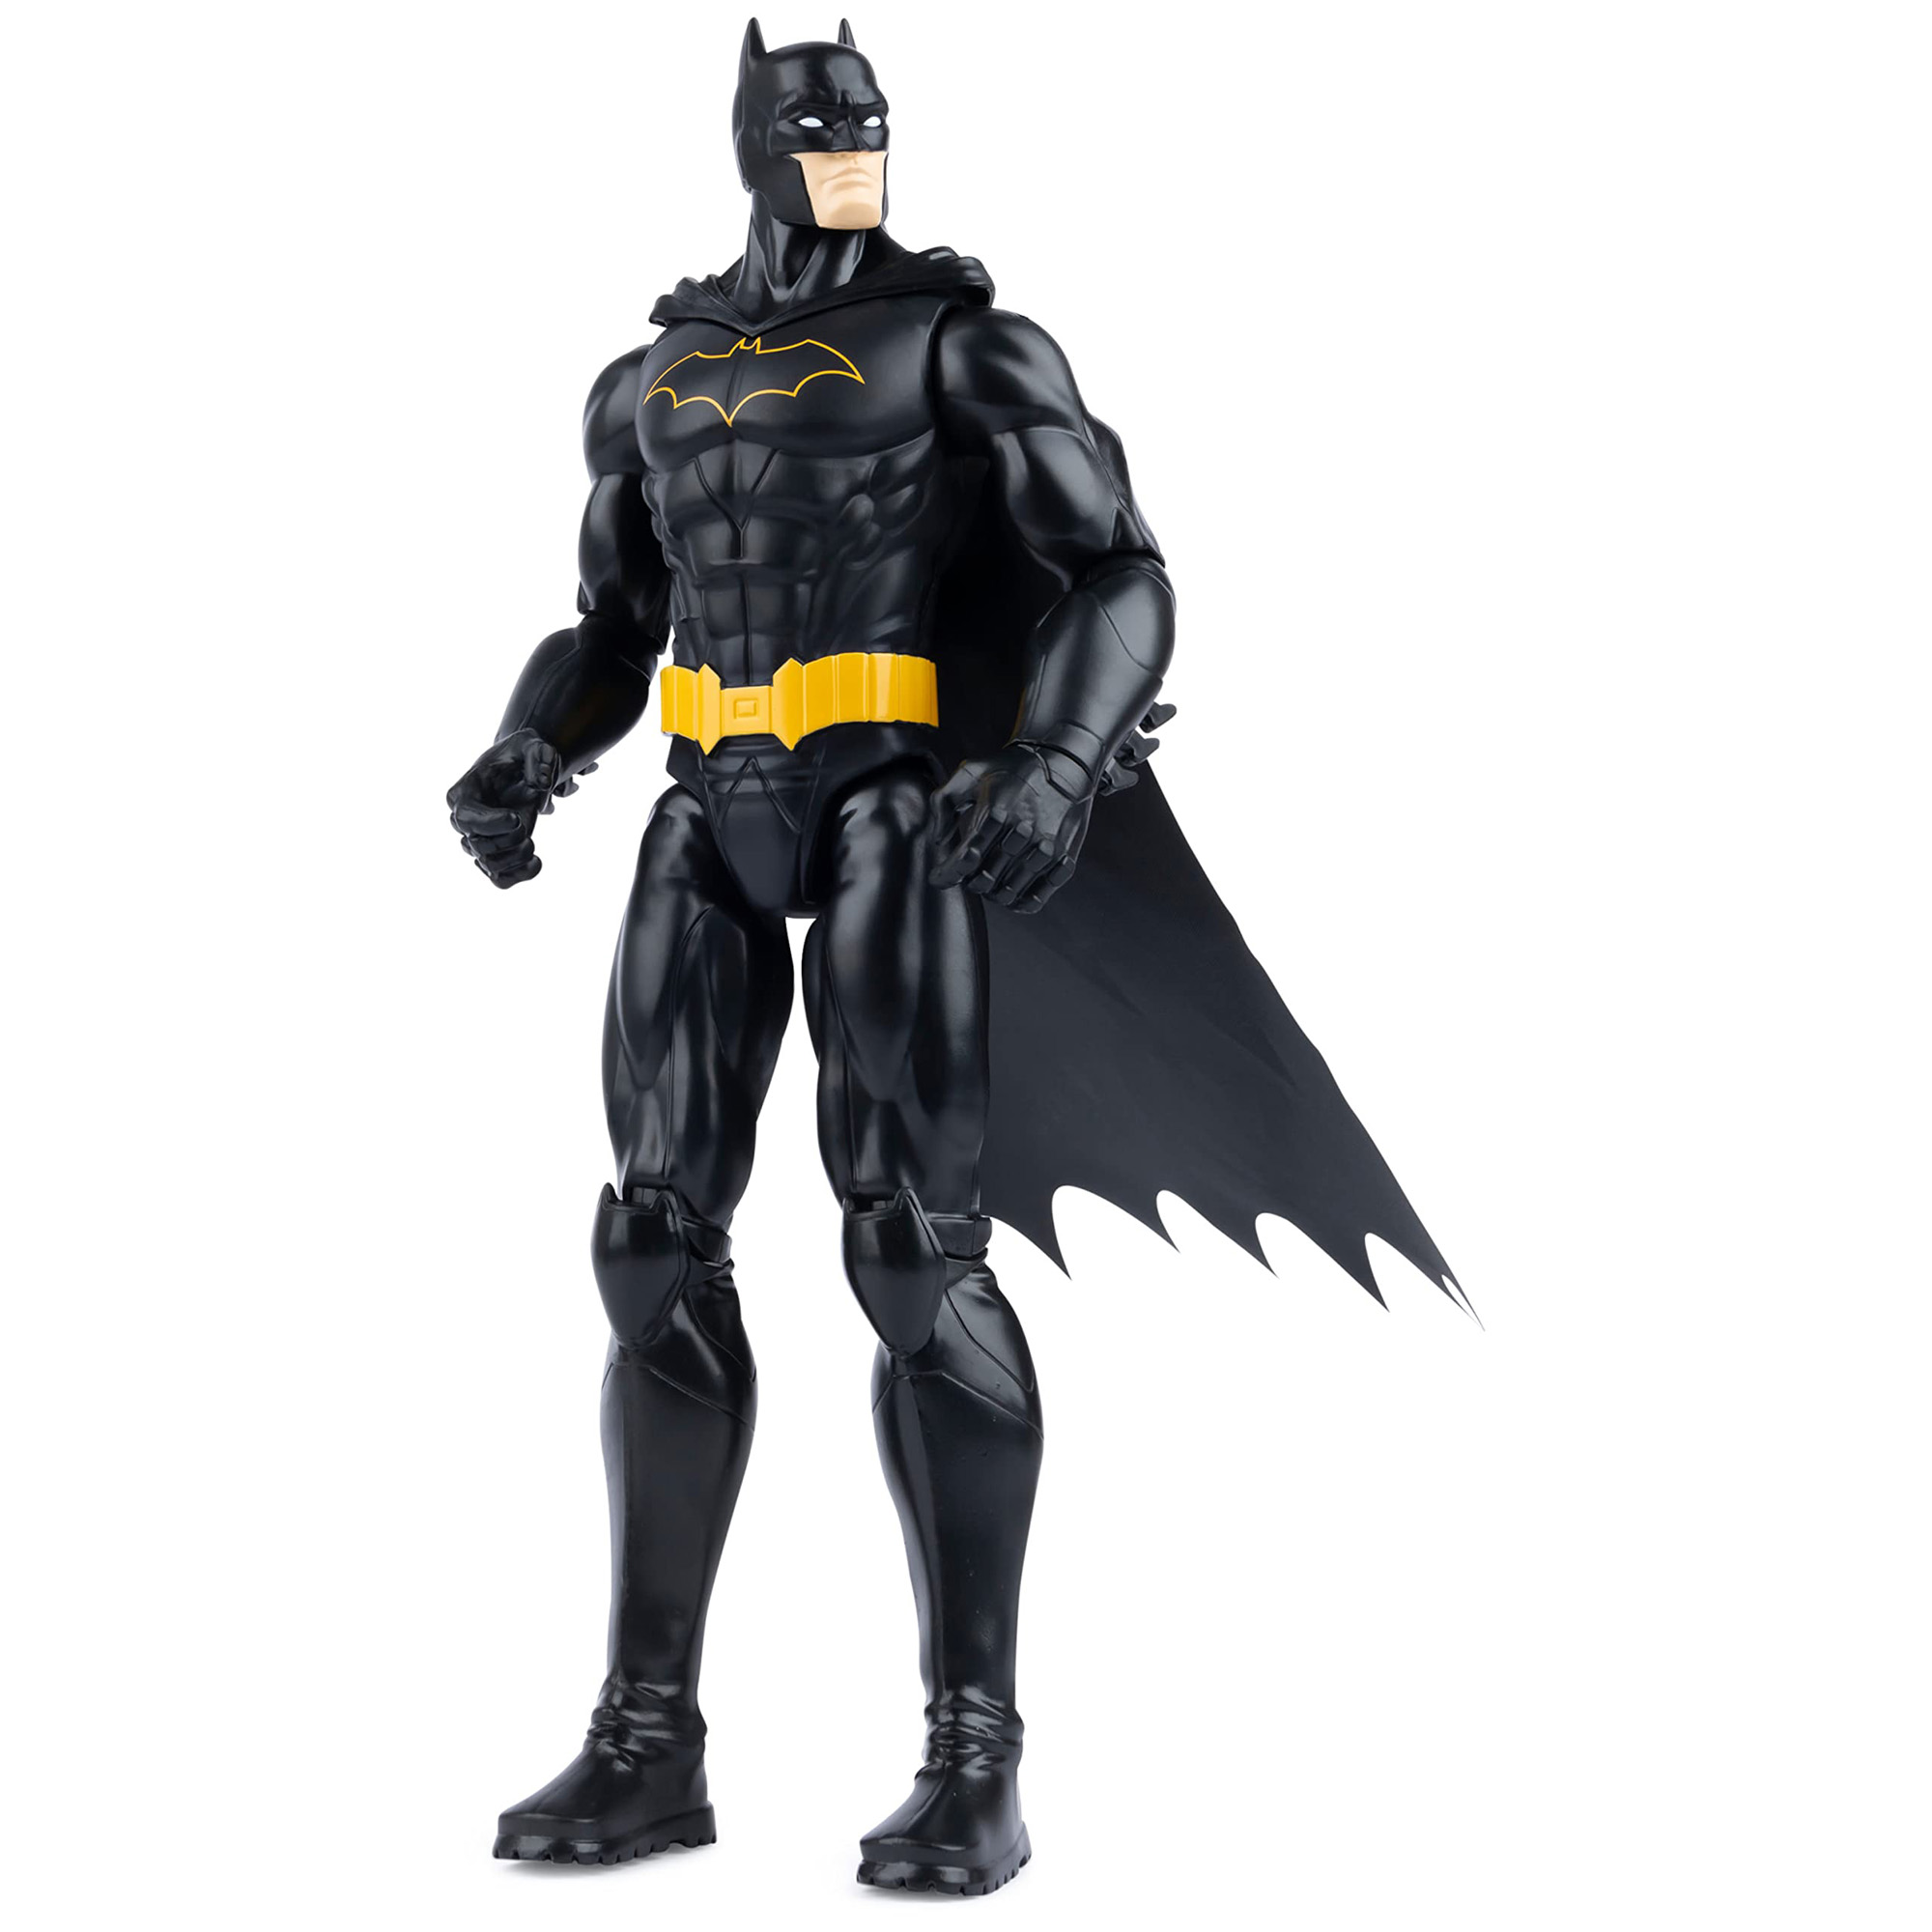 Batman Action Figure 30cm con decorazioni e armatura nera originale, mantello e 11 punti di articolazione - DC Comics